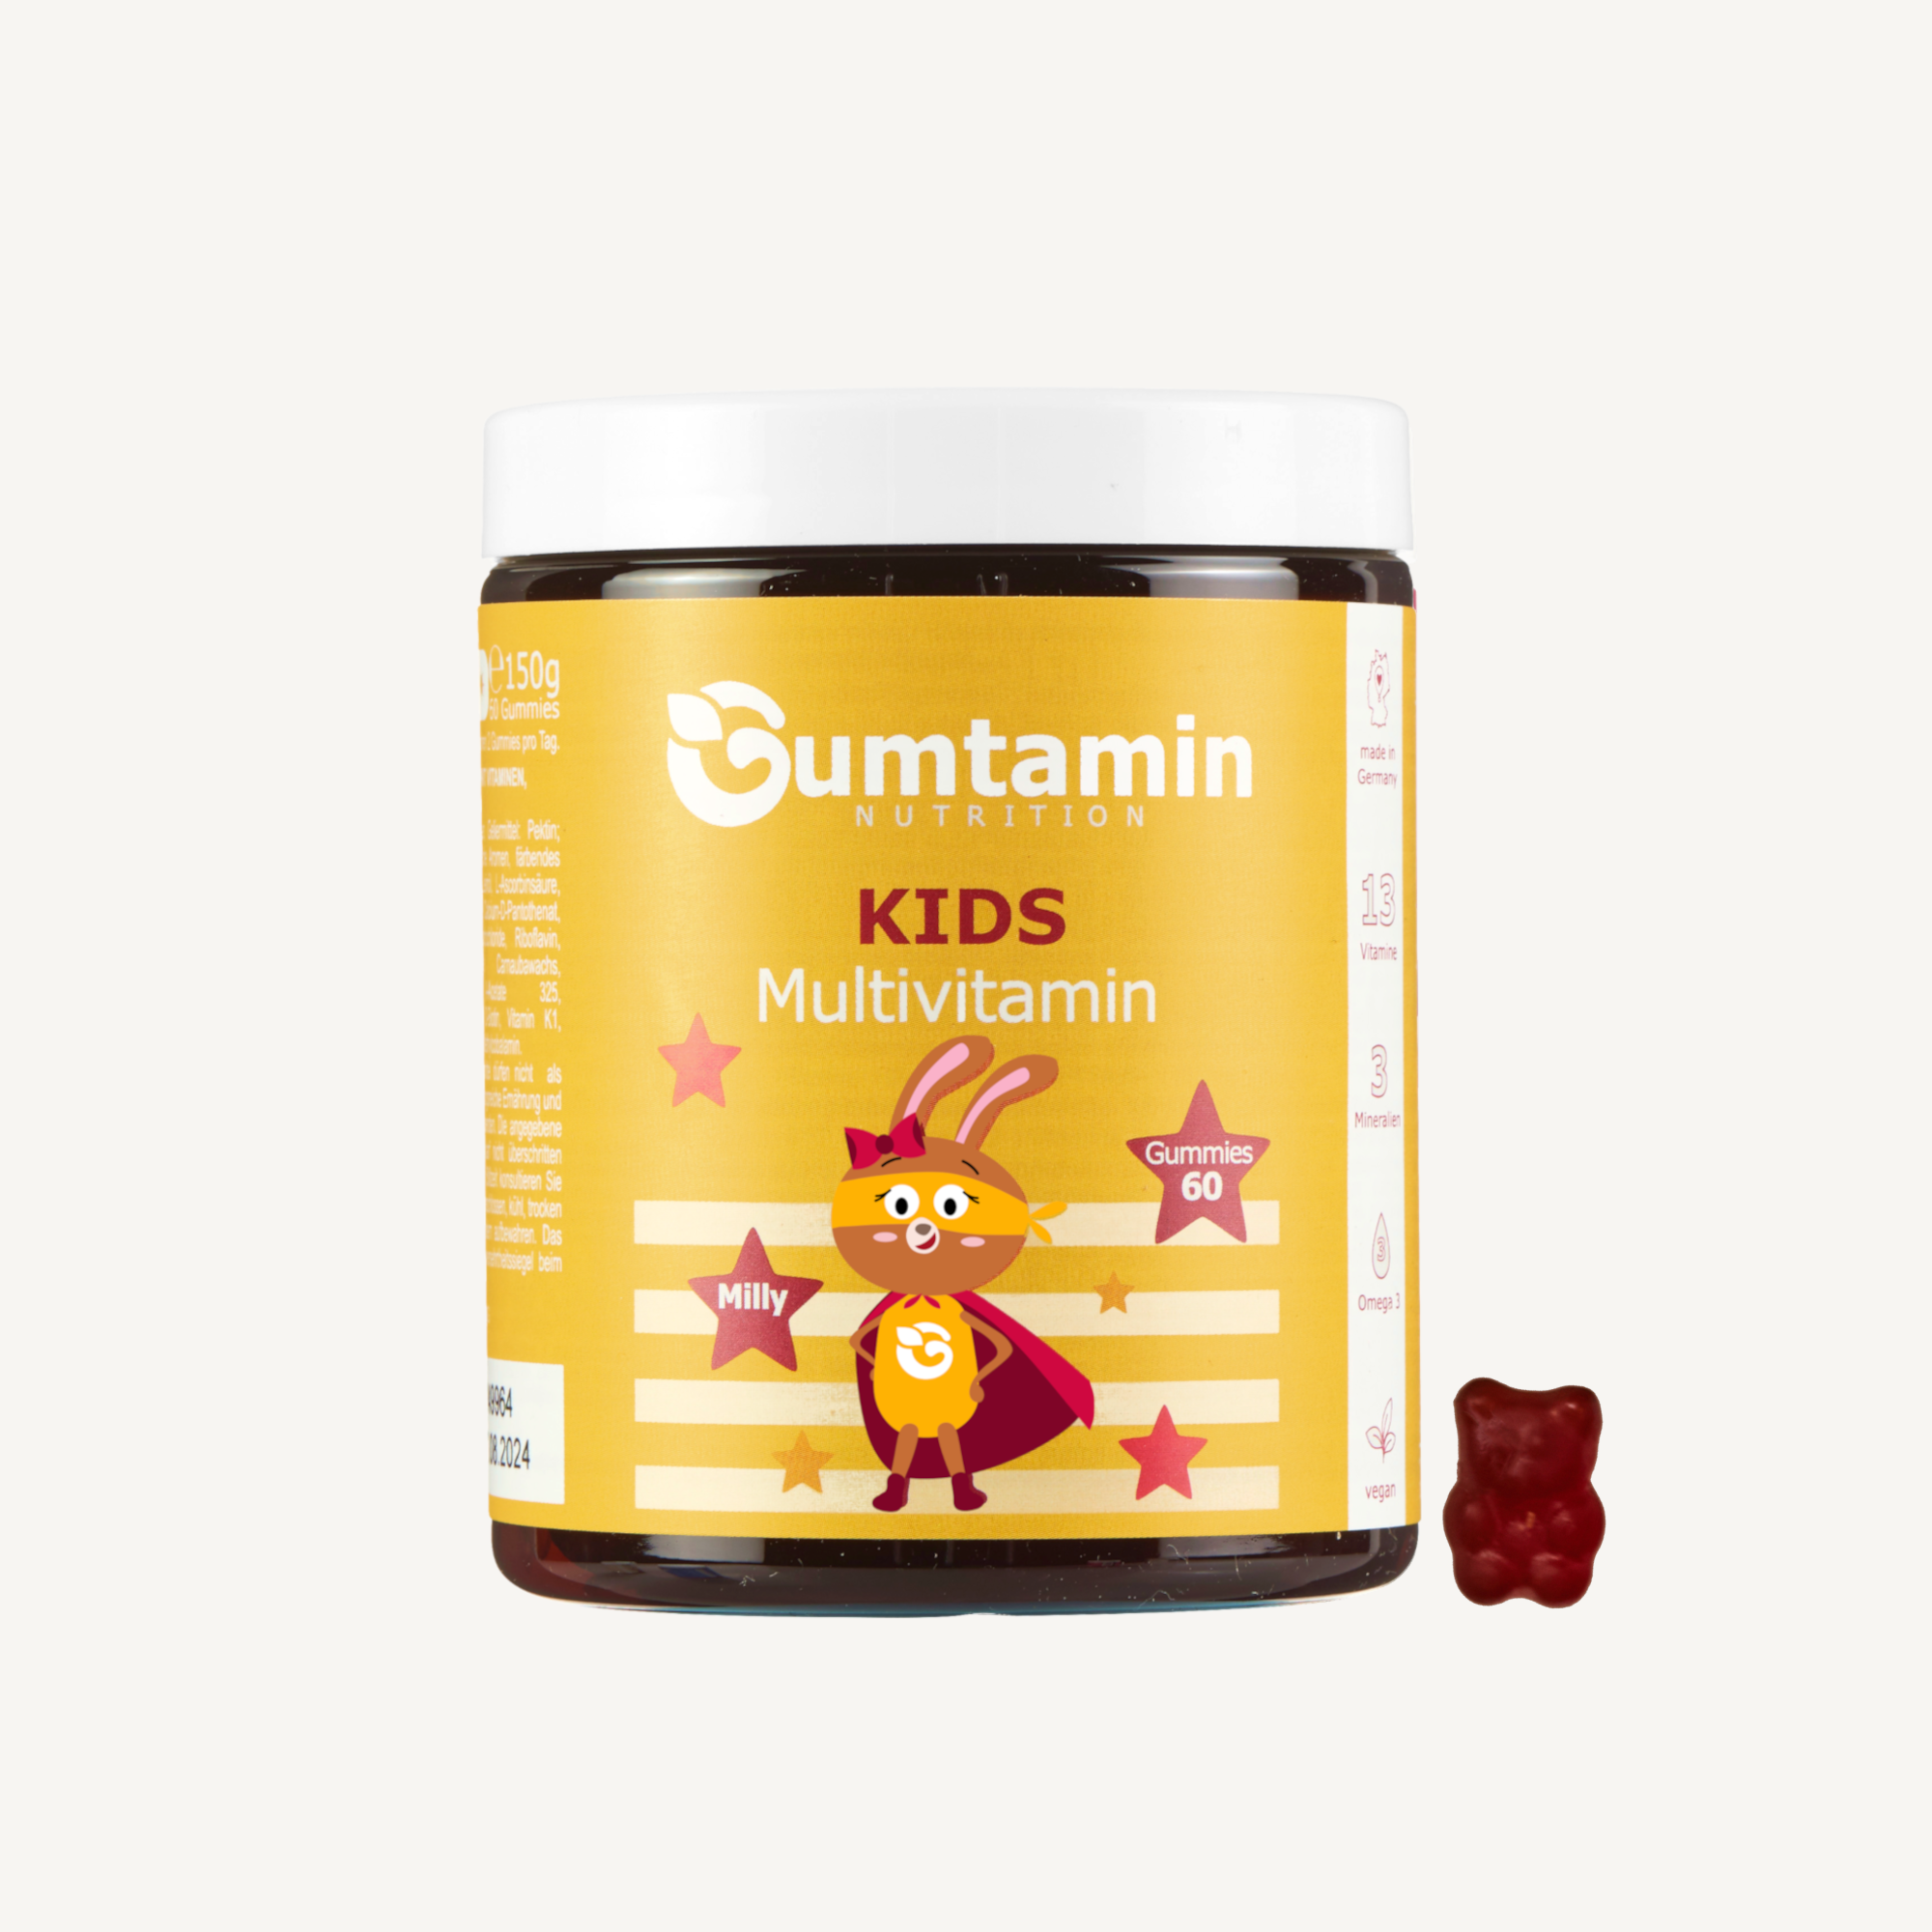 Kids Multivitamin Gummies gelb